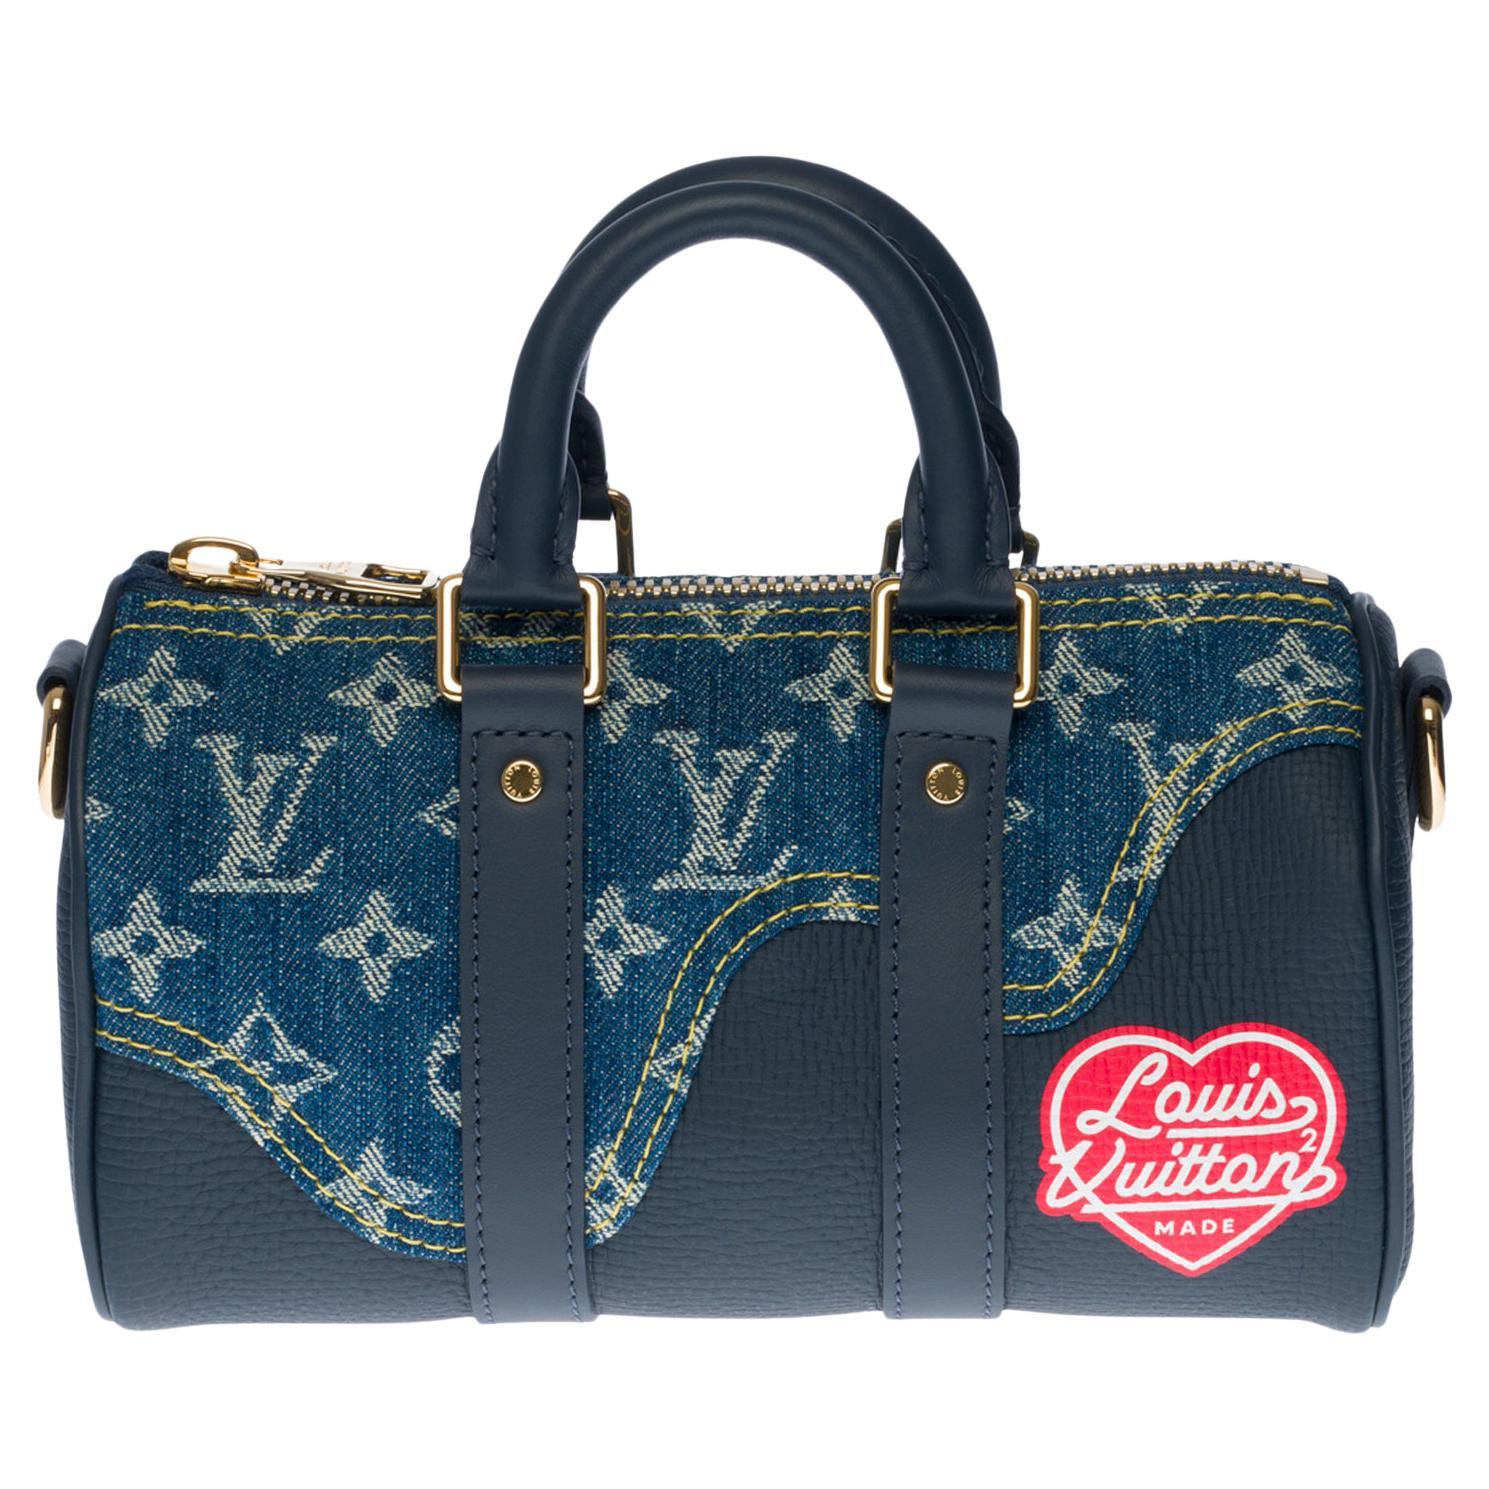 Louis Vuitton X Nigo - 18 For Sale on 1stDibs